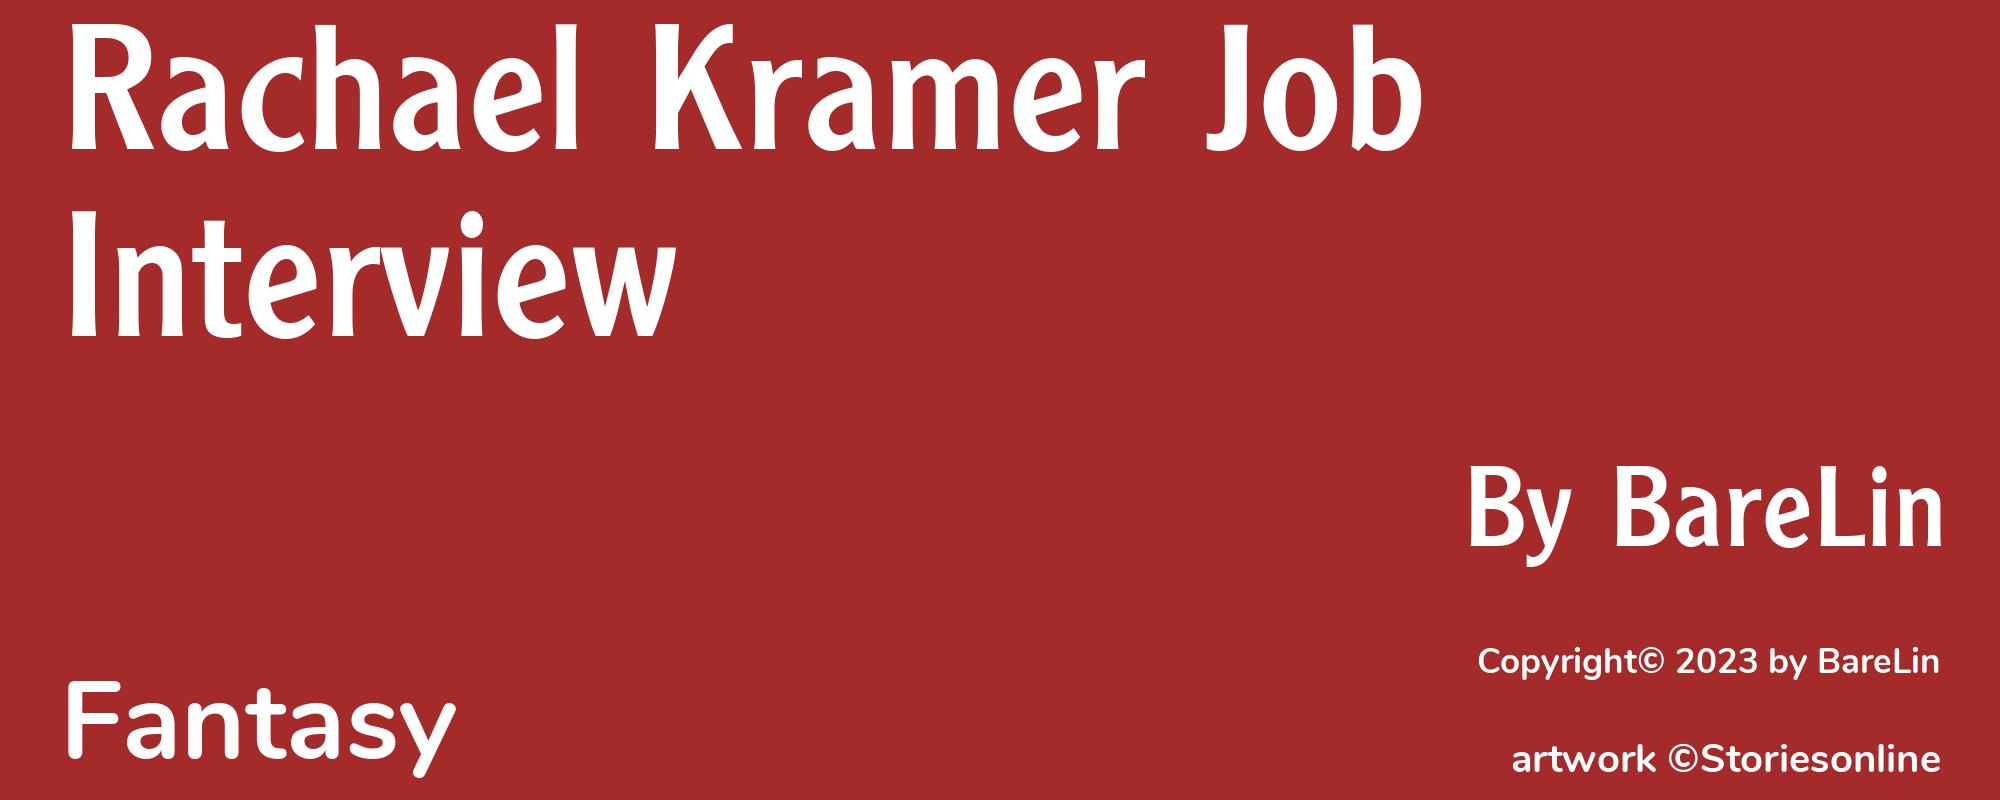 Rachael Kramer Job Interview - Cover